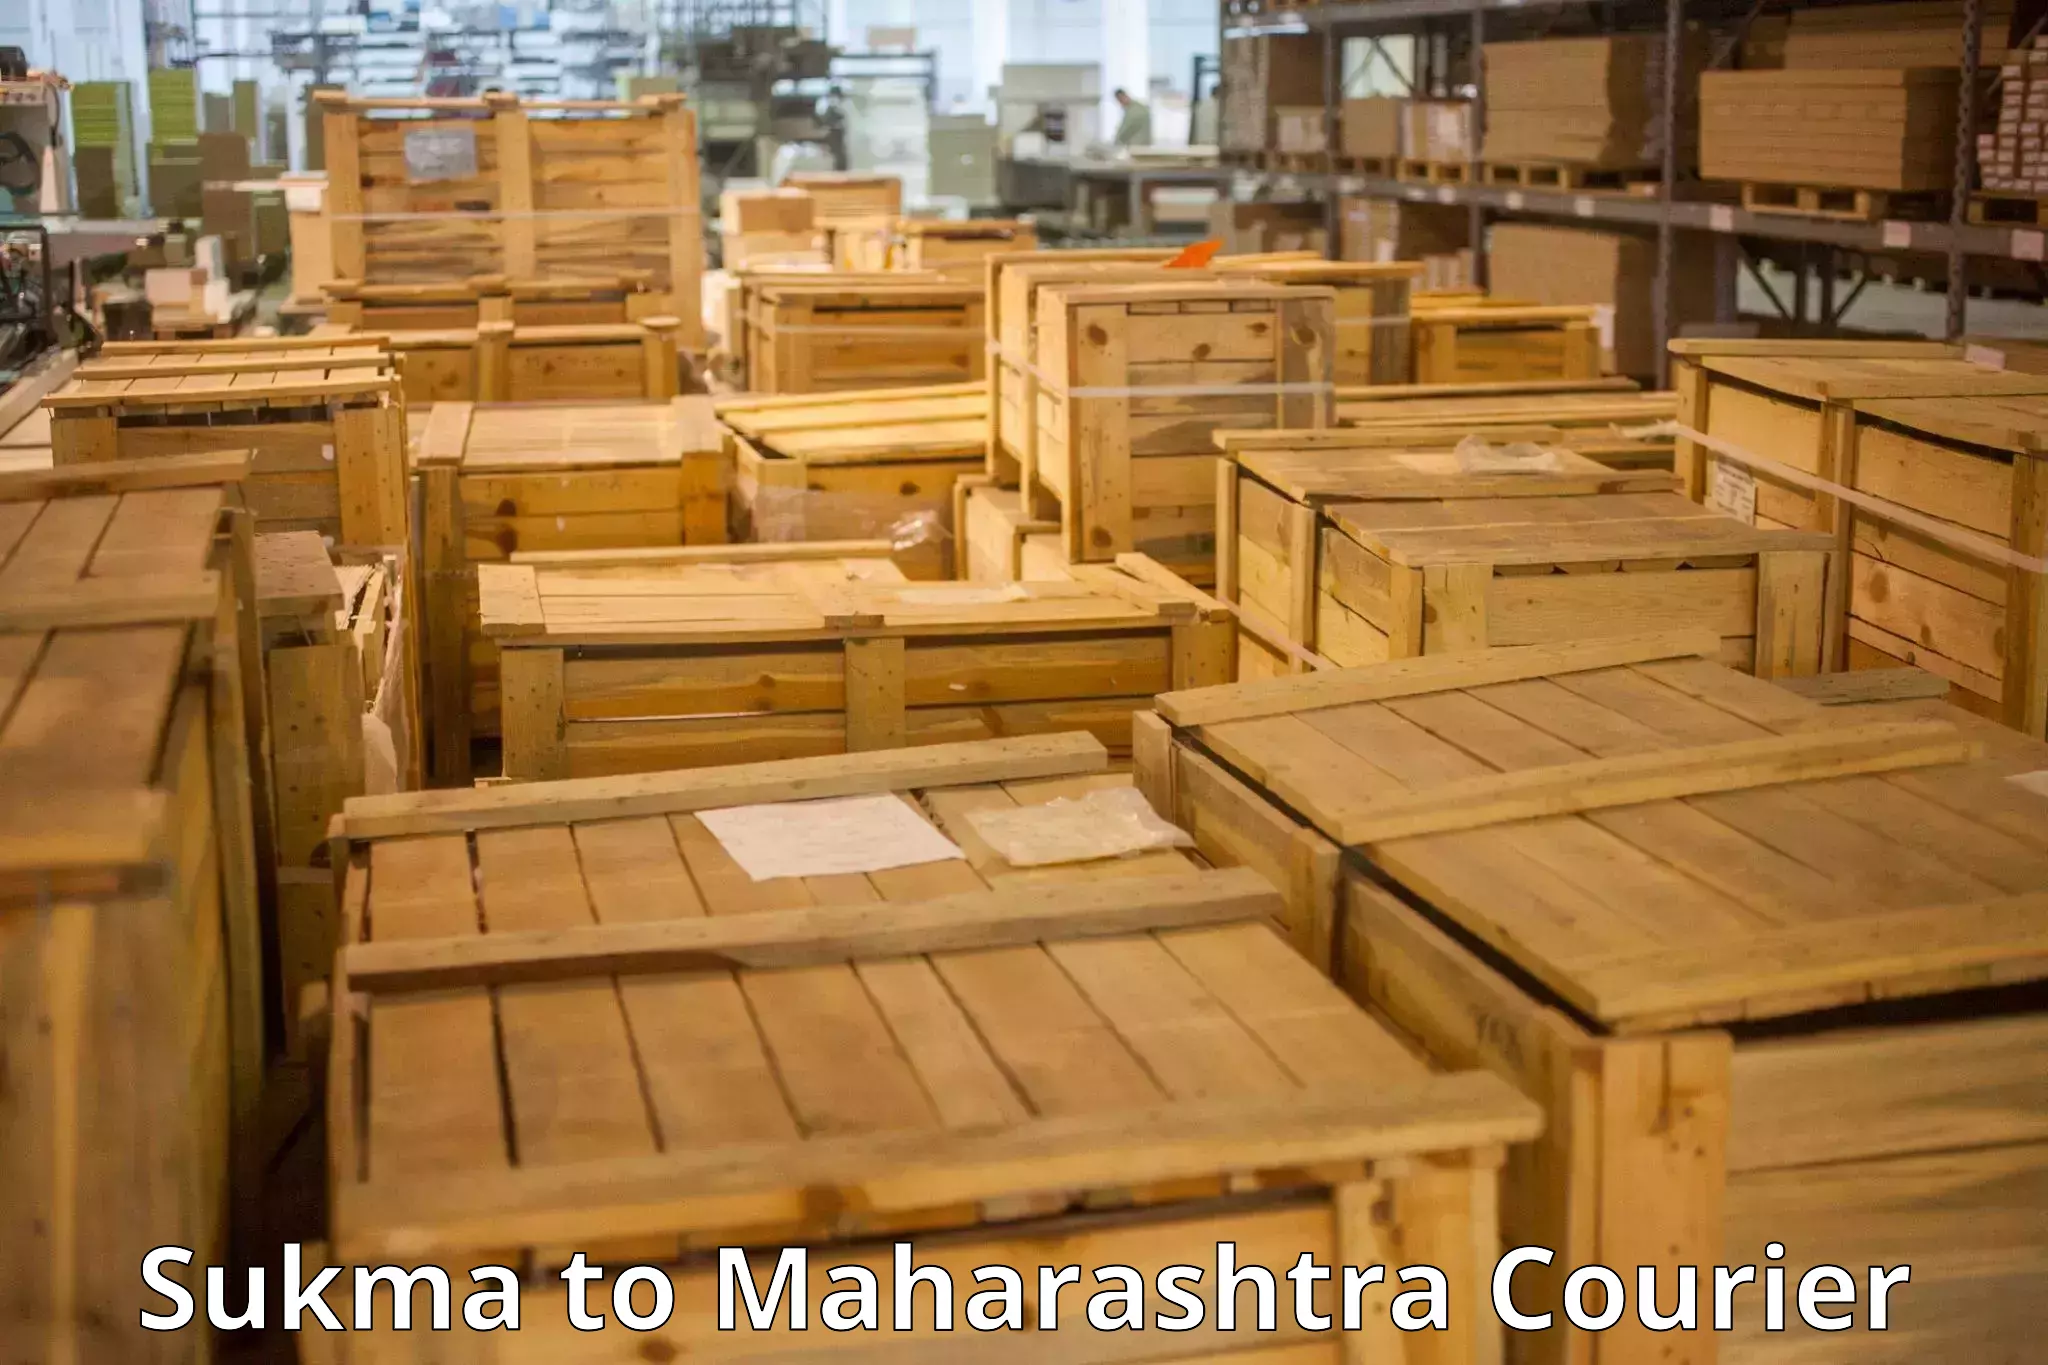 Baggage shipping service Sukma to Maharashtra